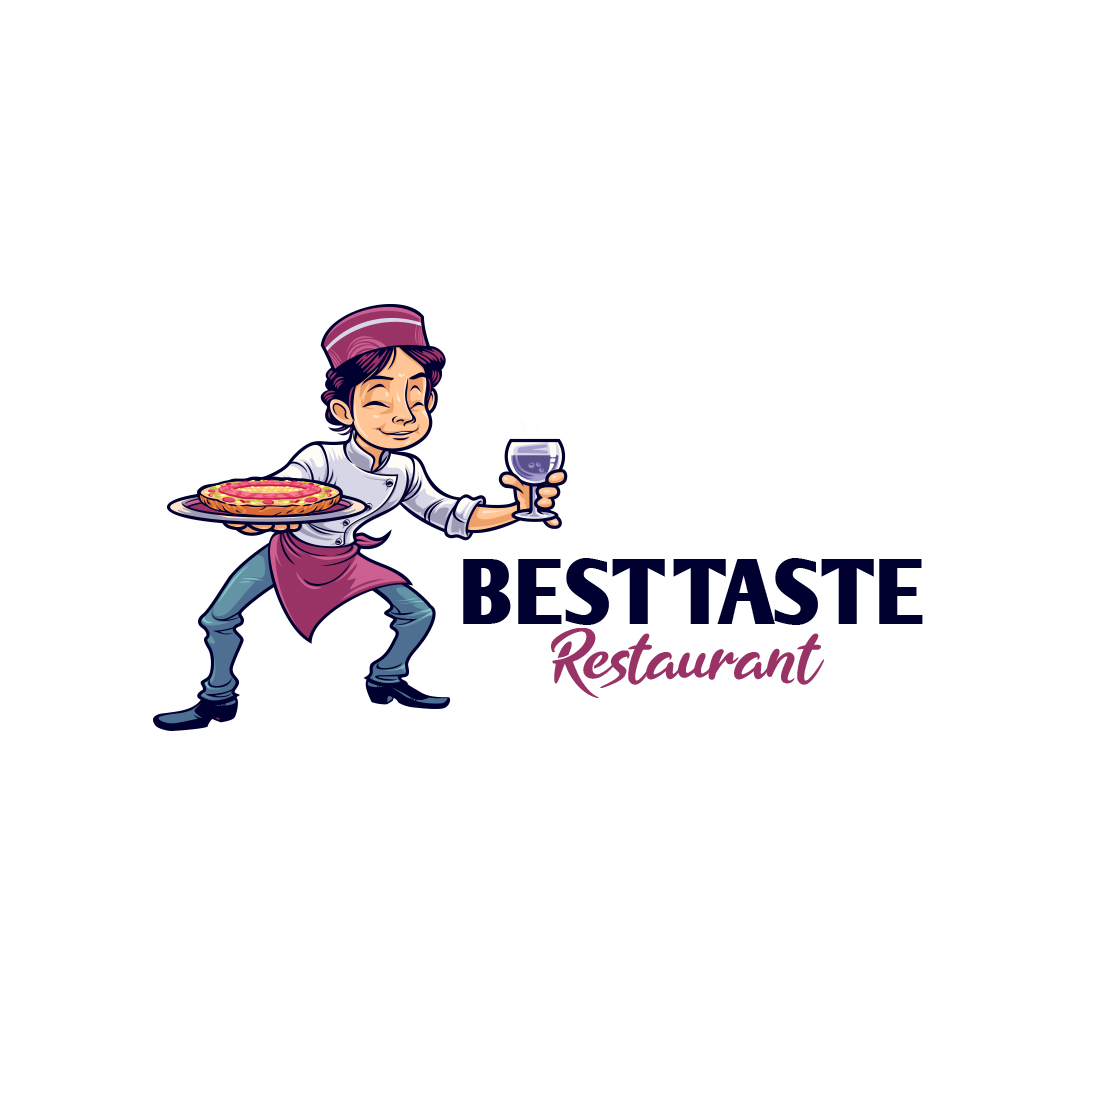 Best Taste Restaurant Logo preview image.